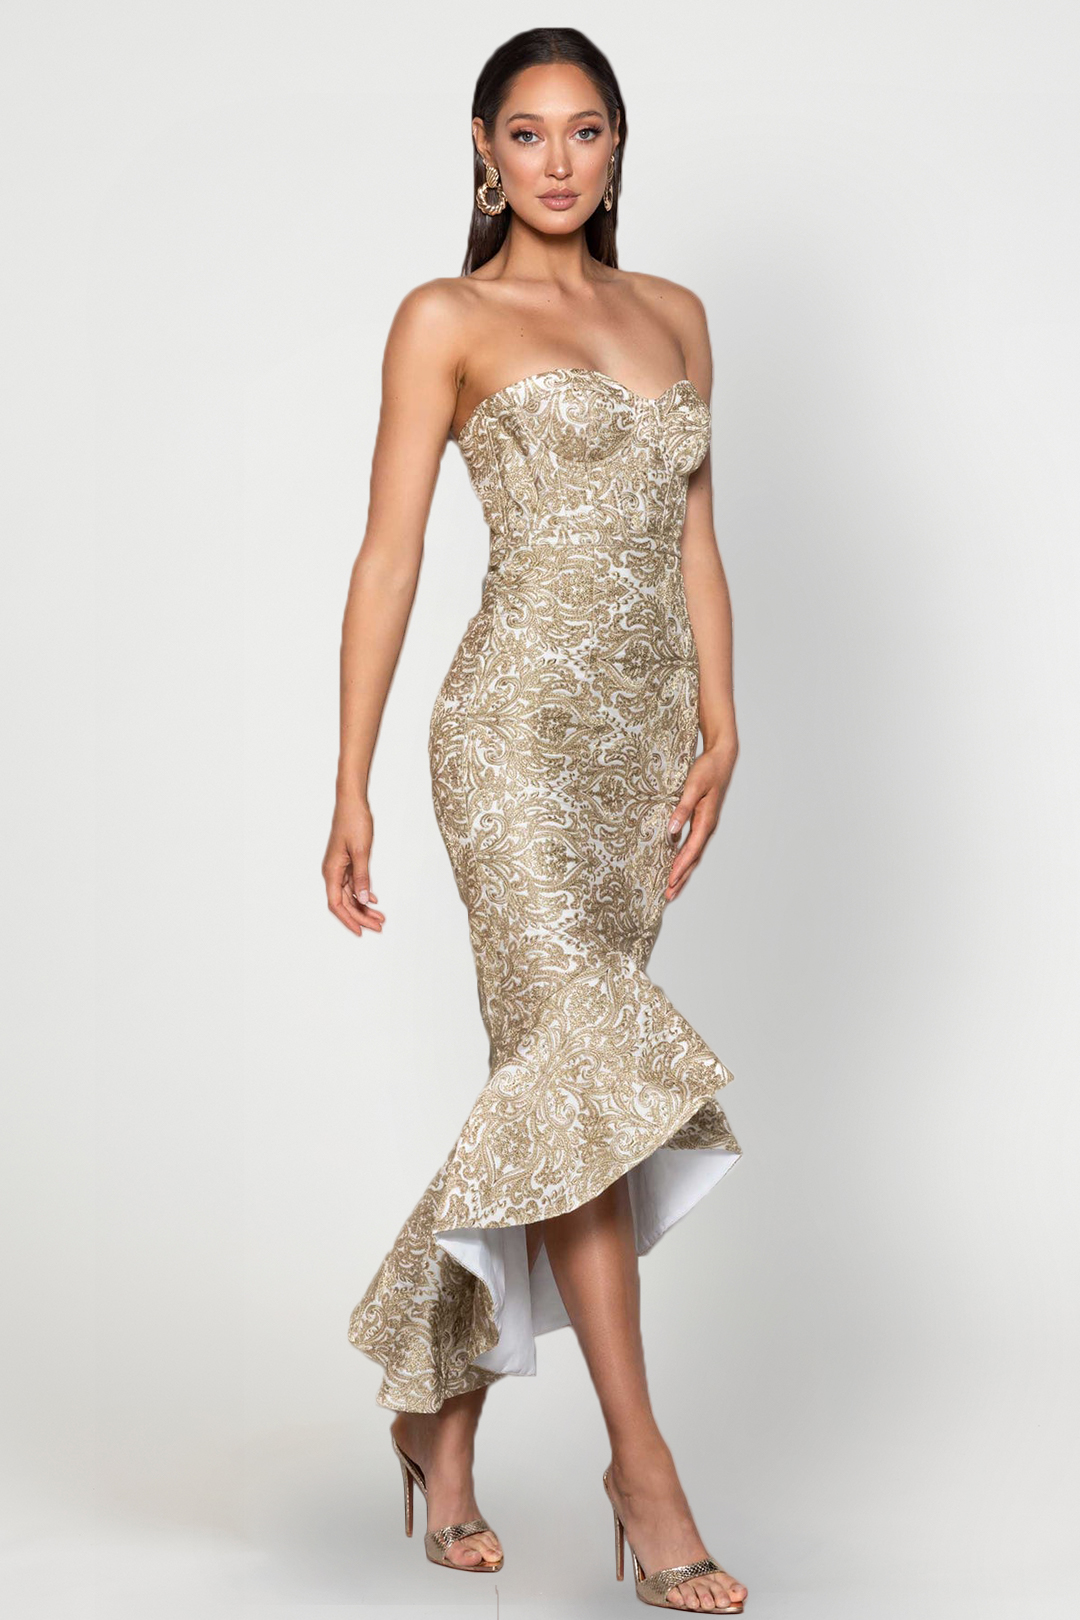 Yasmin Gold Dress Elle Zeitoune-Dress Rental Rent A Dress Walk